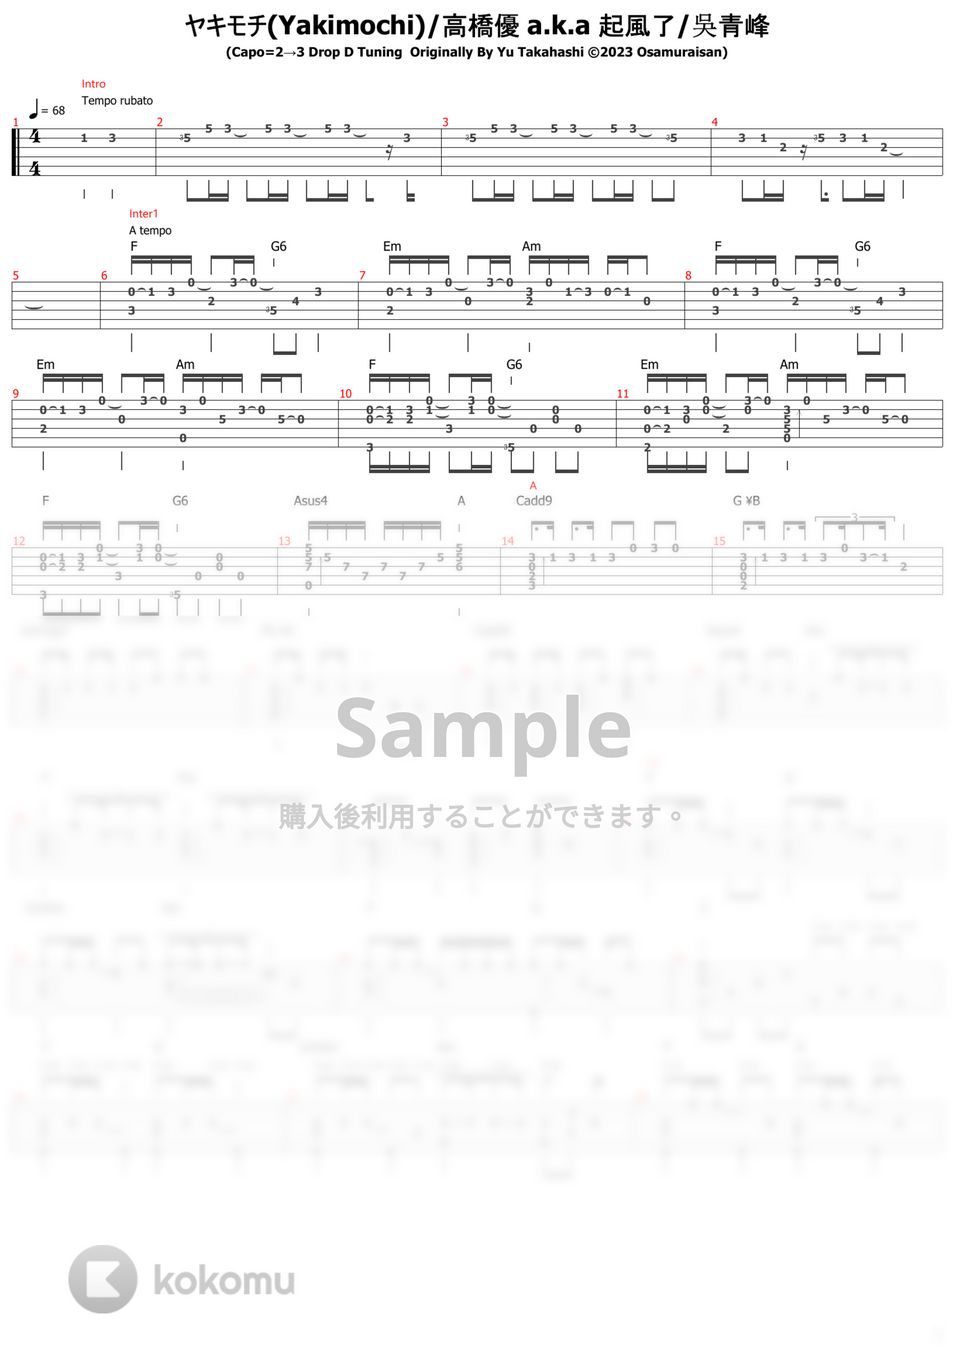 高橋優 - ヤキモチ (ソロギター) by おさむらいさん